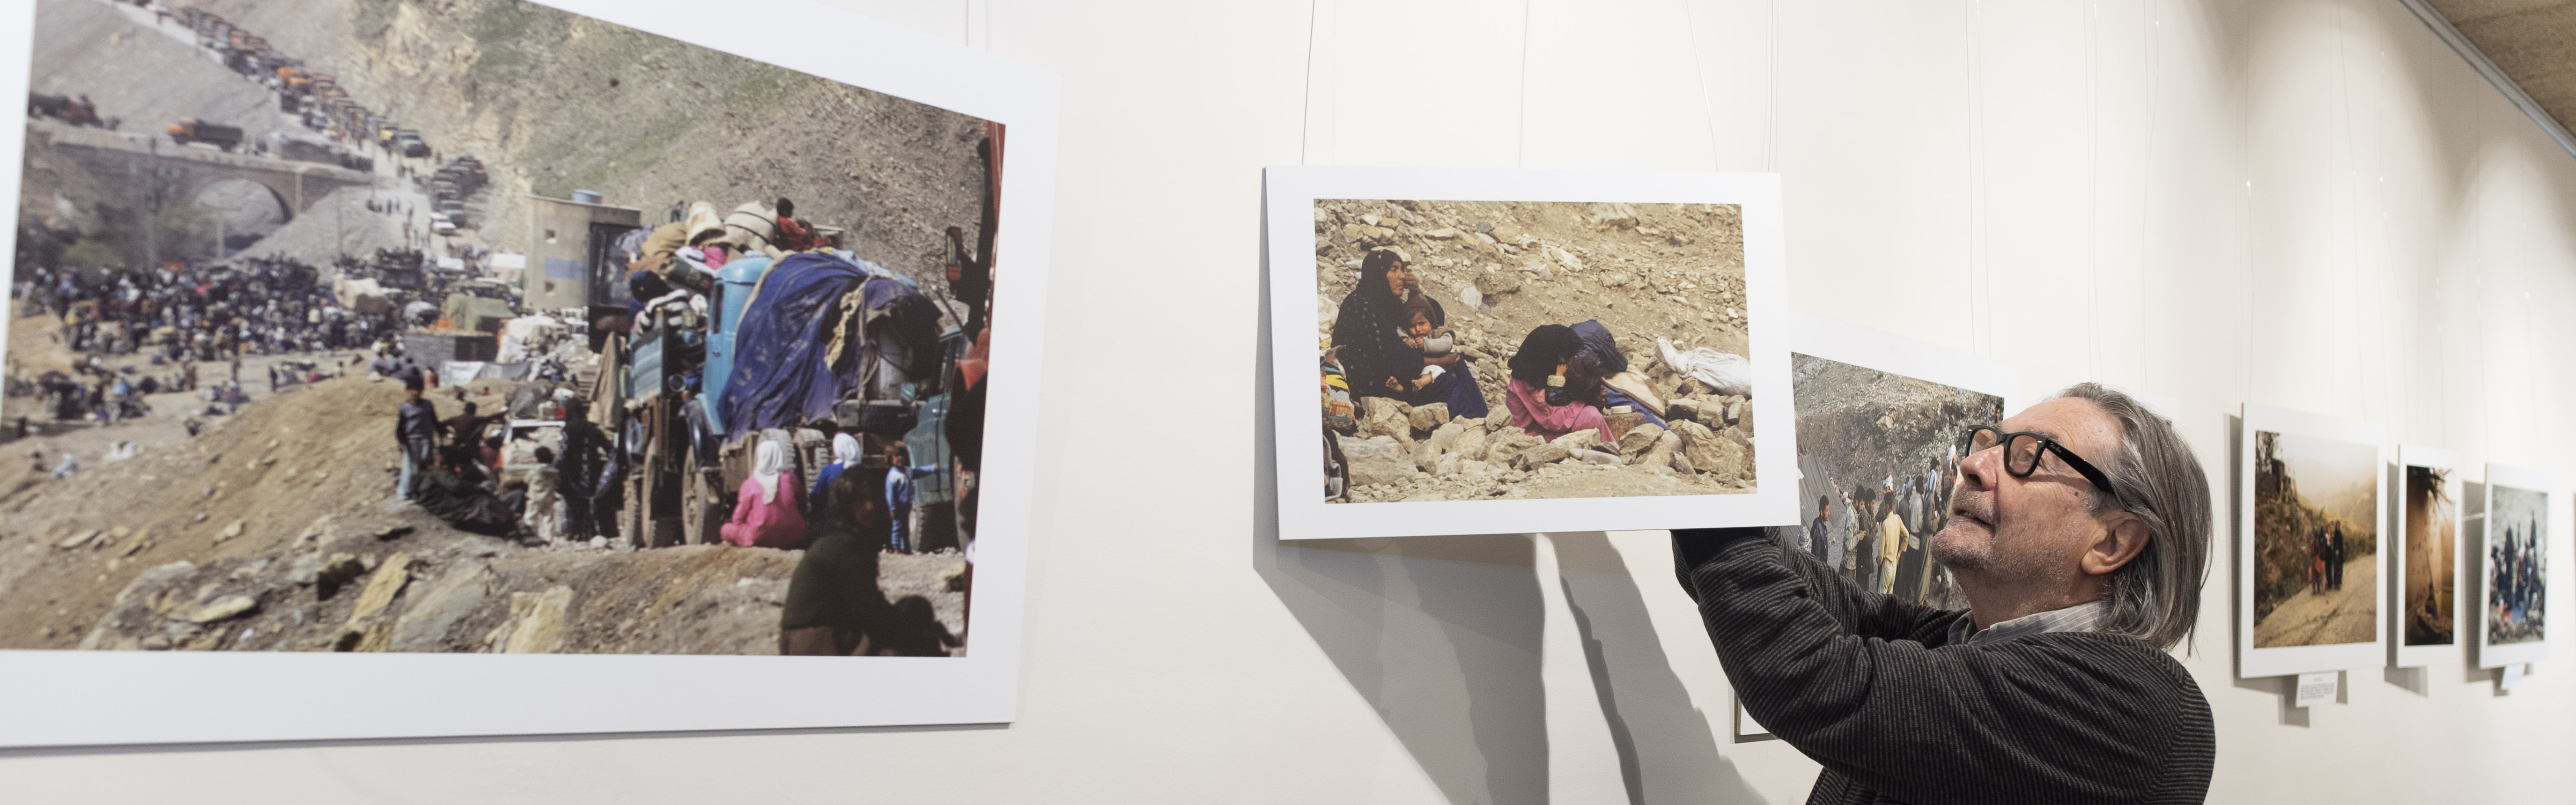 Mesa redonda y exposición fotográfica sobre el éxodo de los kurdos iraquíes